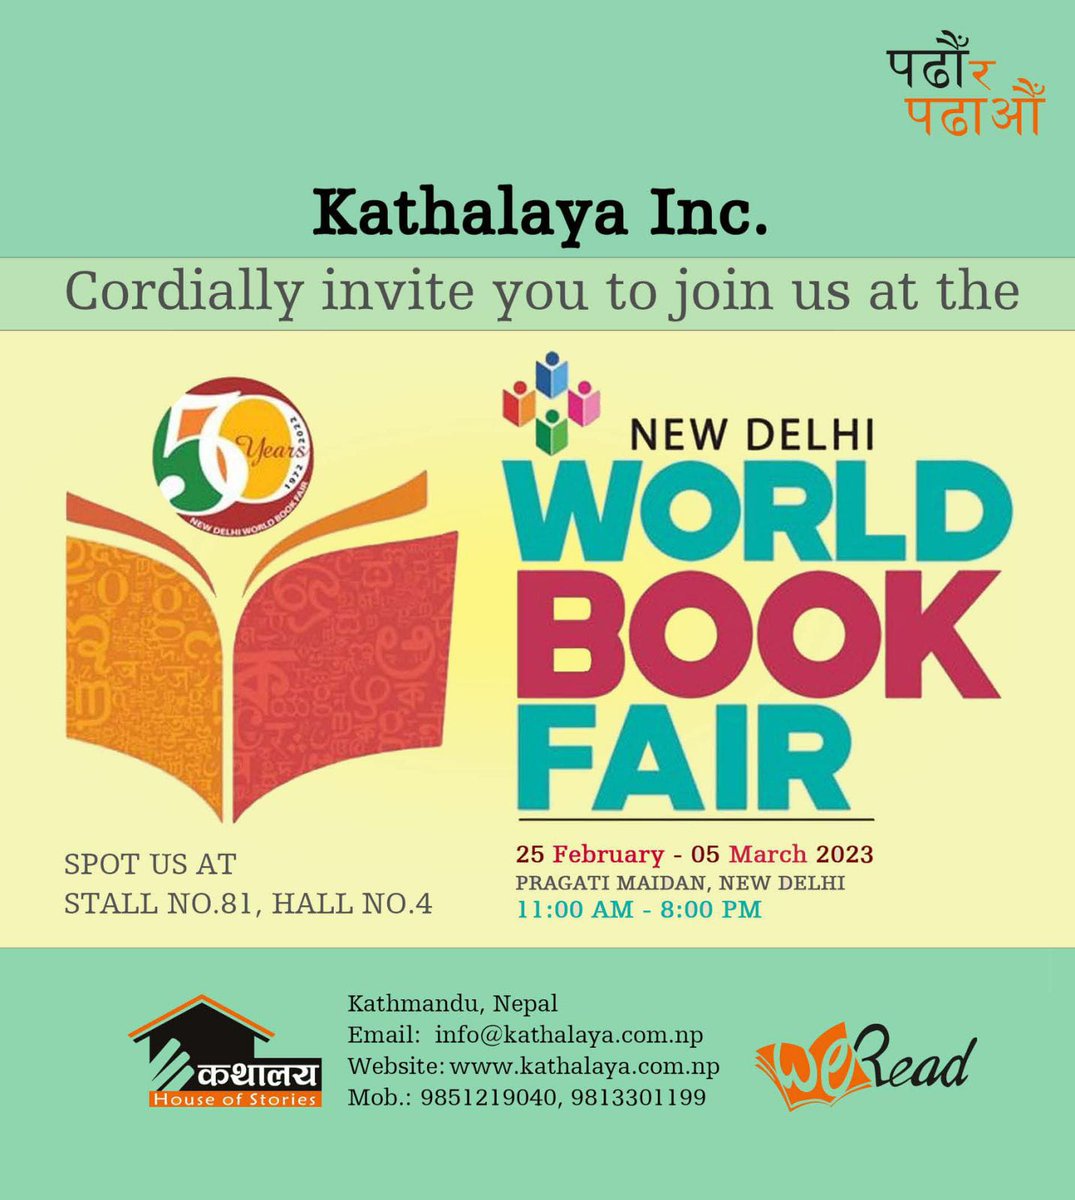 Kathalaya Inc. cordially invite you all to join us at the New Delhi World Book Fair- 2023.
#kathalayanepal #kathalayainc #padhaurapadhaau #newdelhibookfair #bookfair2023